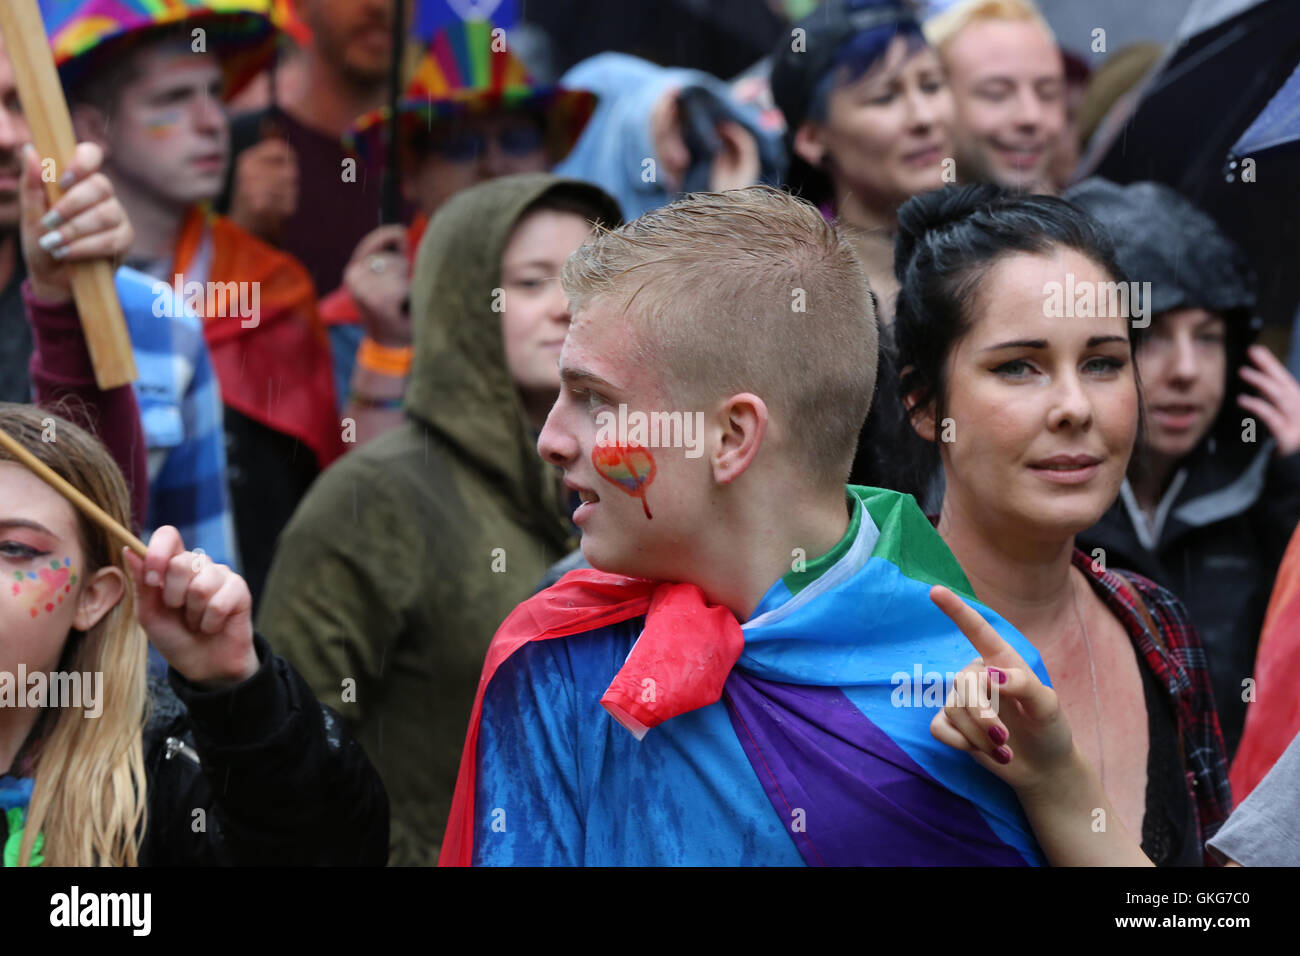 Glasgow Gay Pride 2016 défilé dans le centre-ville Banque D'Images